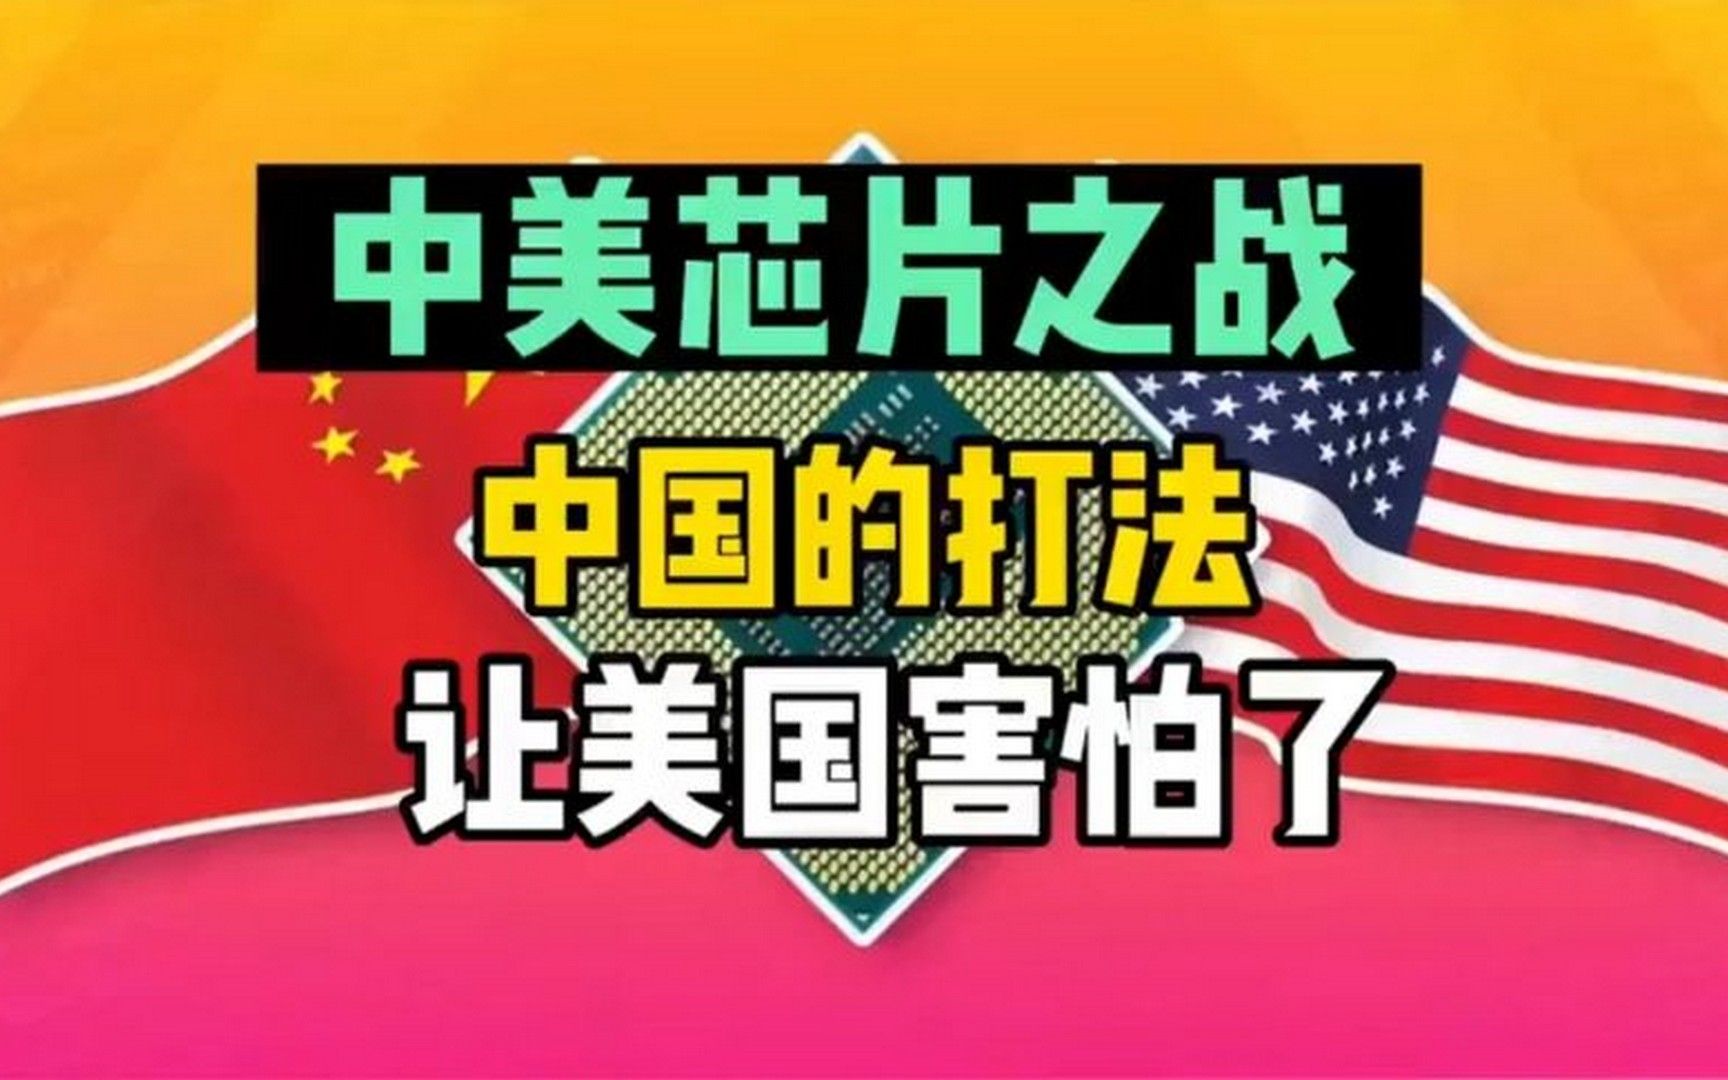 中国芯片的打法让美国害怕了！音频来源：静思有我